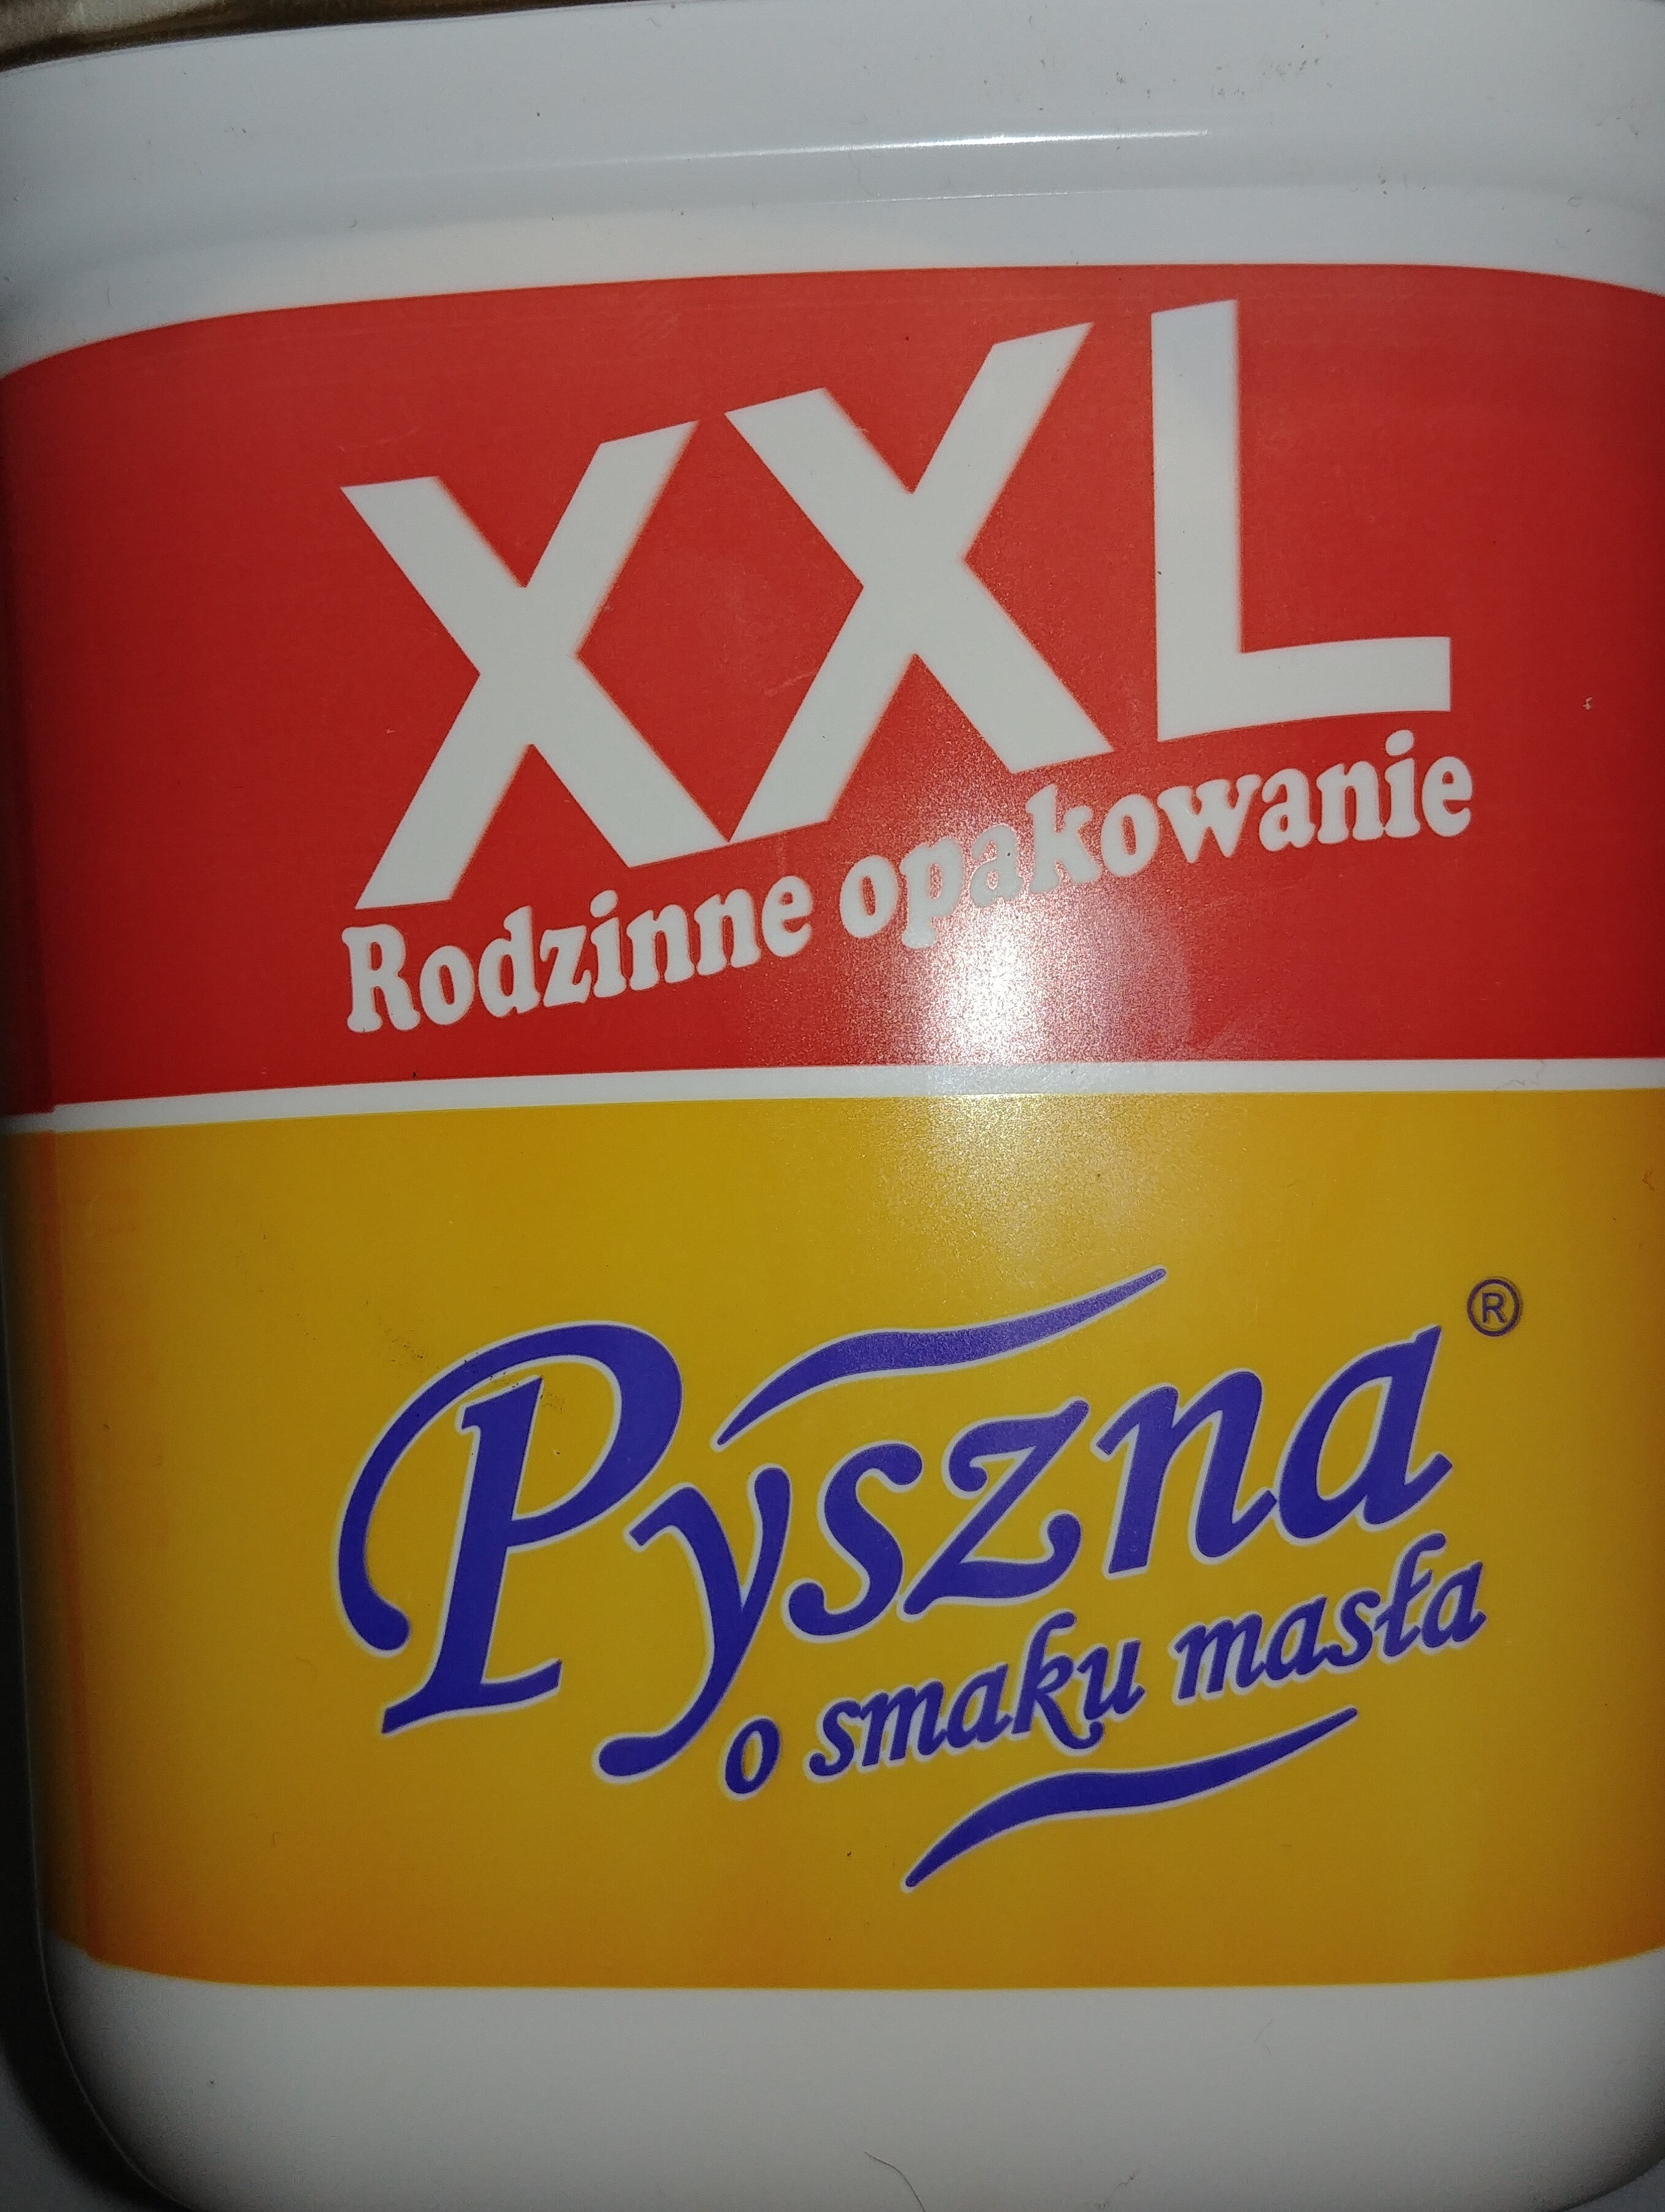 Margaryna Pyszna o smaku masła - Prodotto - pl